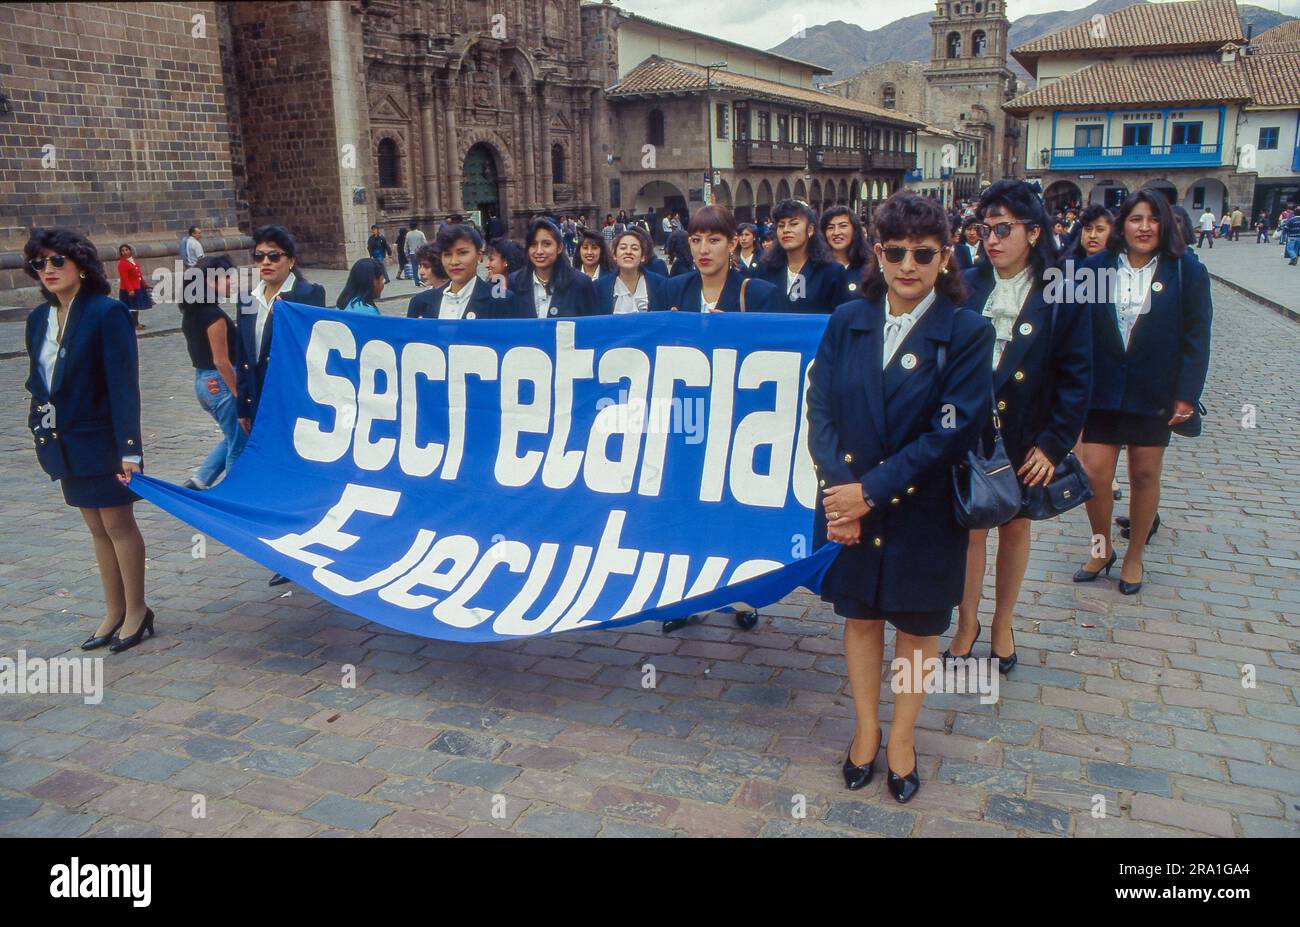 Perù, Cusco; processione dei segretari durante il giorno della segretaria speciale. Foto Stock